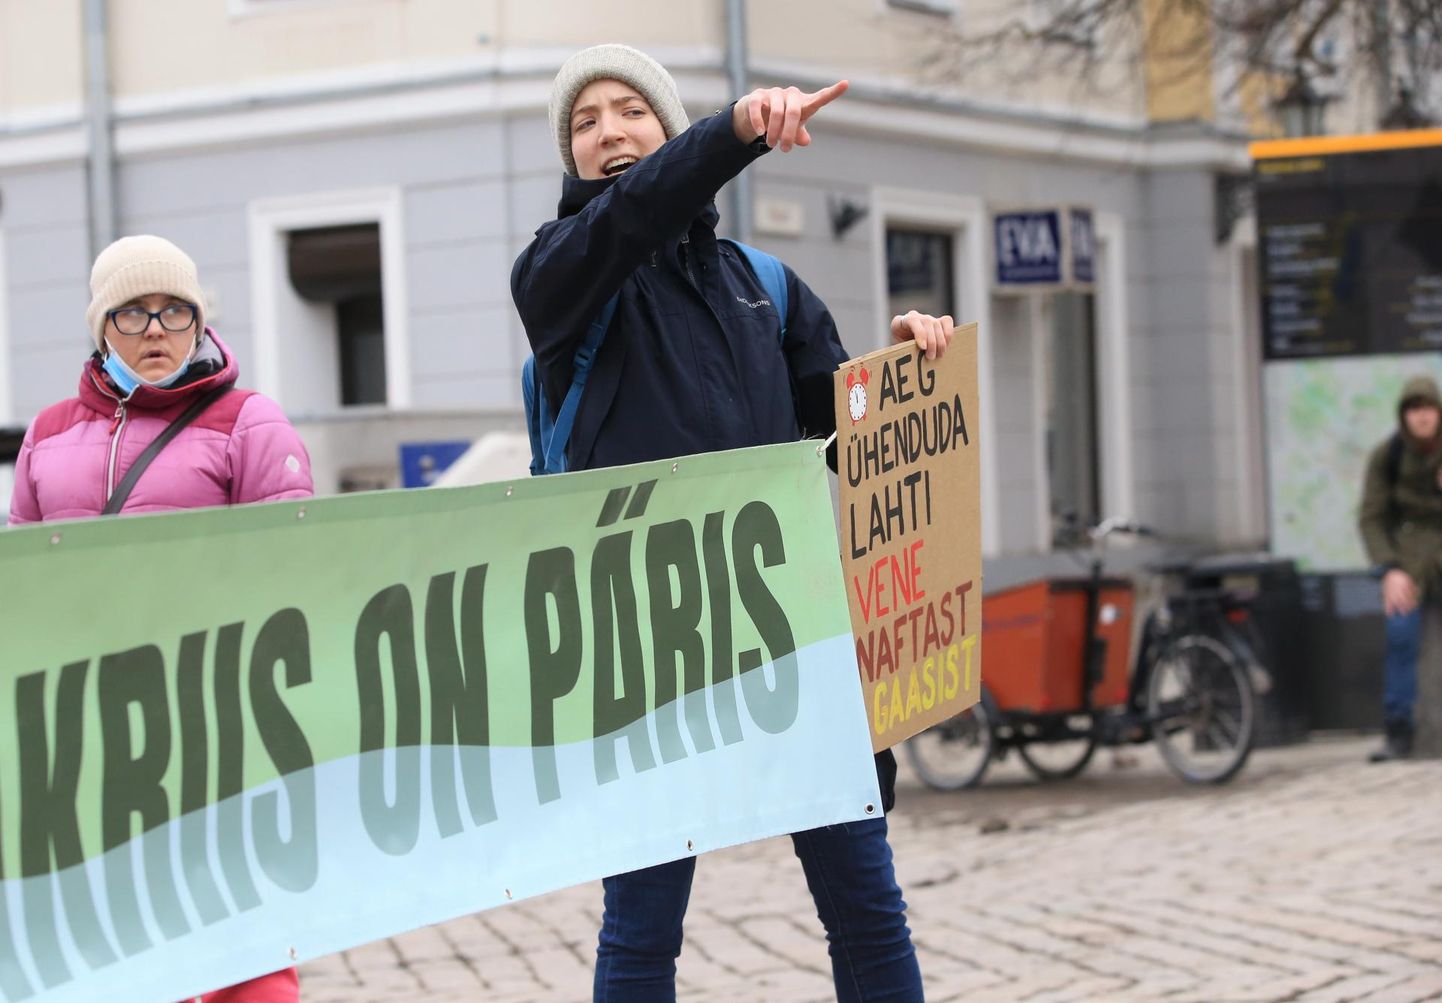 Kliimaliikumise juht Kertu Birgit Anton tunnistab, et plakatiga tänavale tulek on alati enda mugavusalast välja minemine. Ometi leiab ta, et seda on vaja teha.